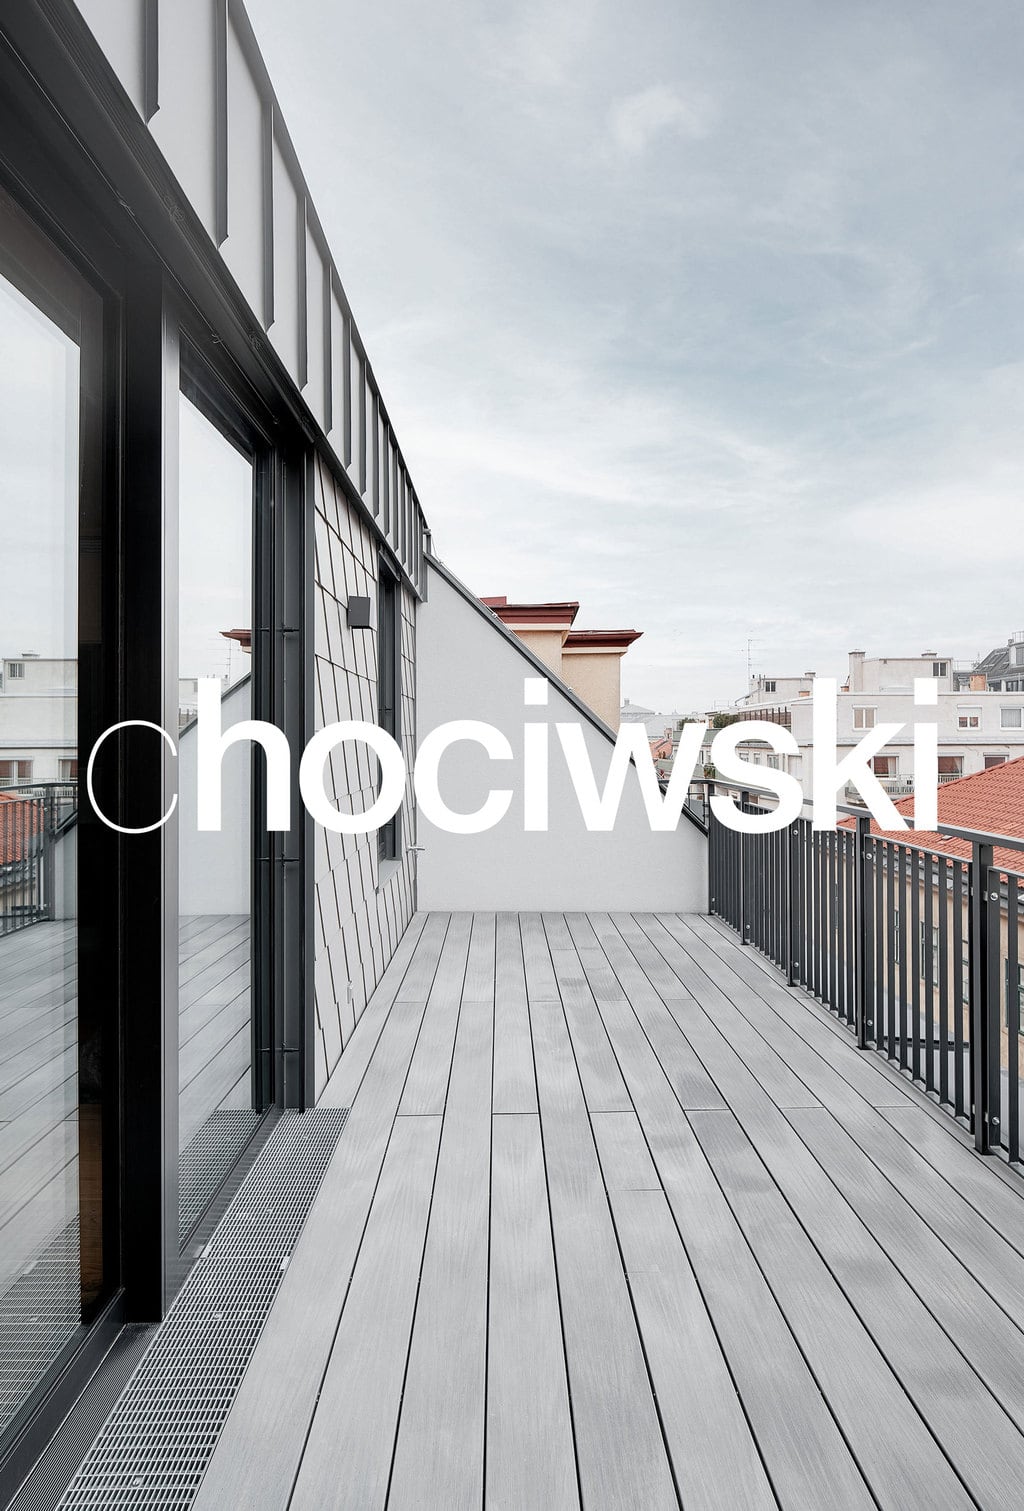 chociwski-logo-architektur_10